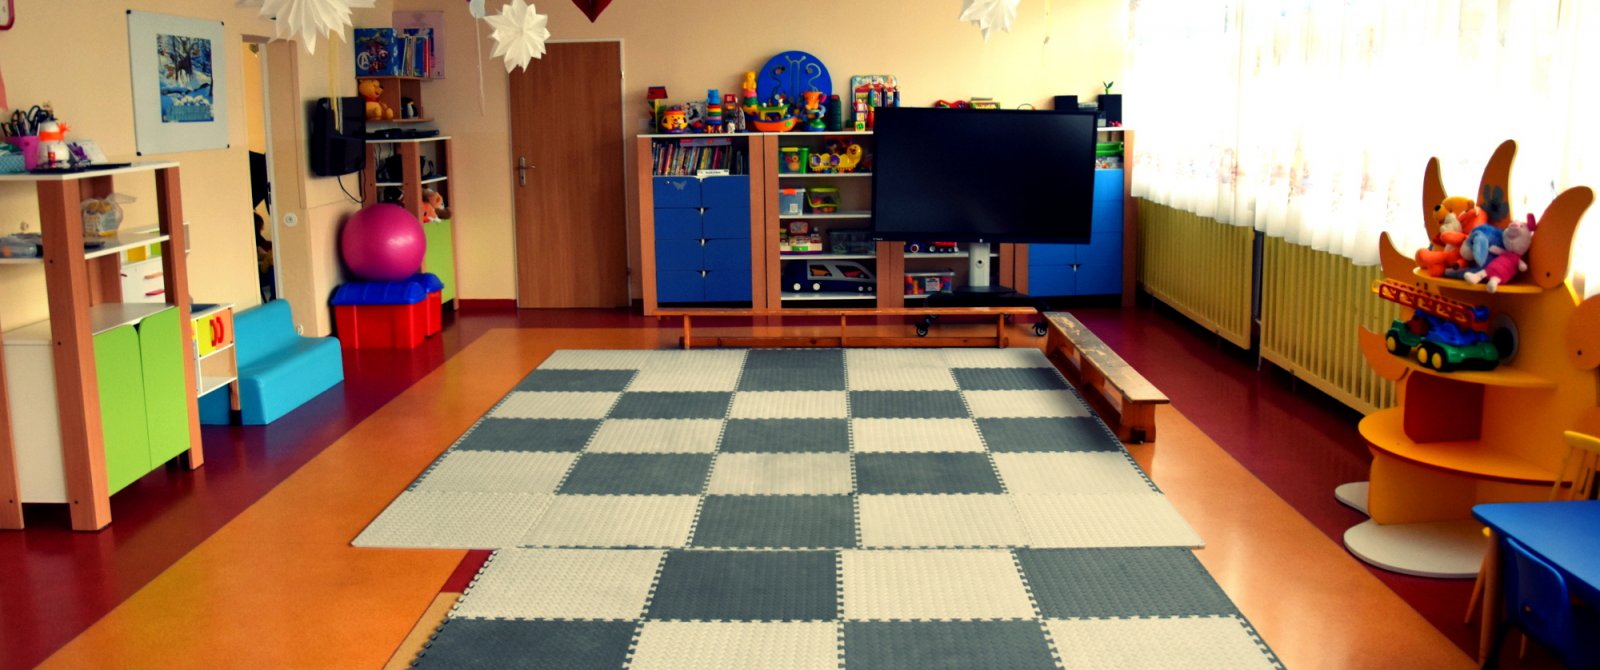 Sala zabaw dla małych dzieci, maty na podłodze, kolorowe zabawki, w tle duży telewizor